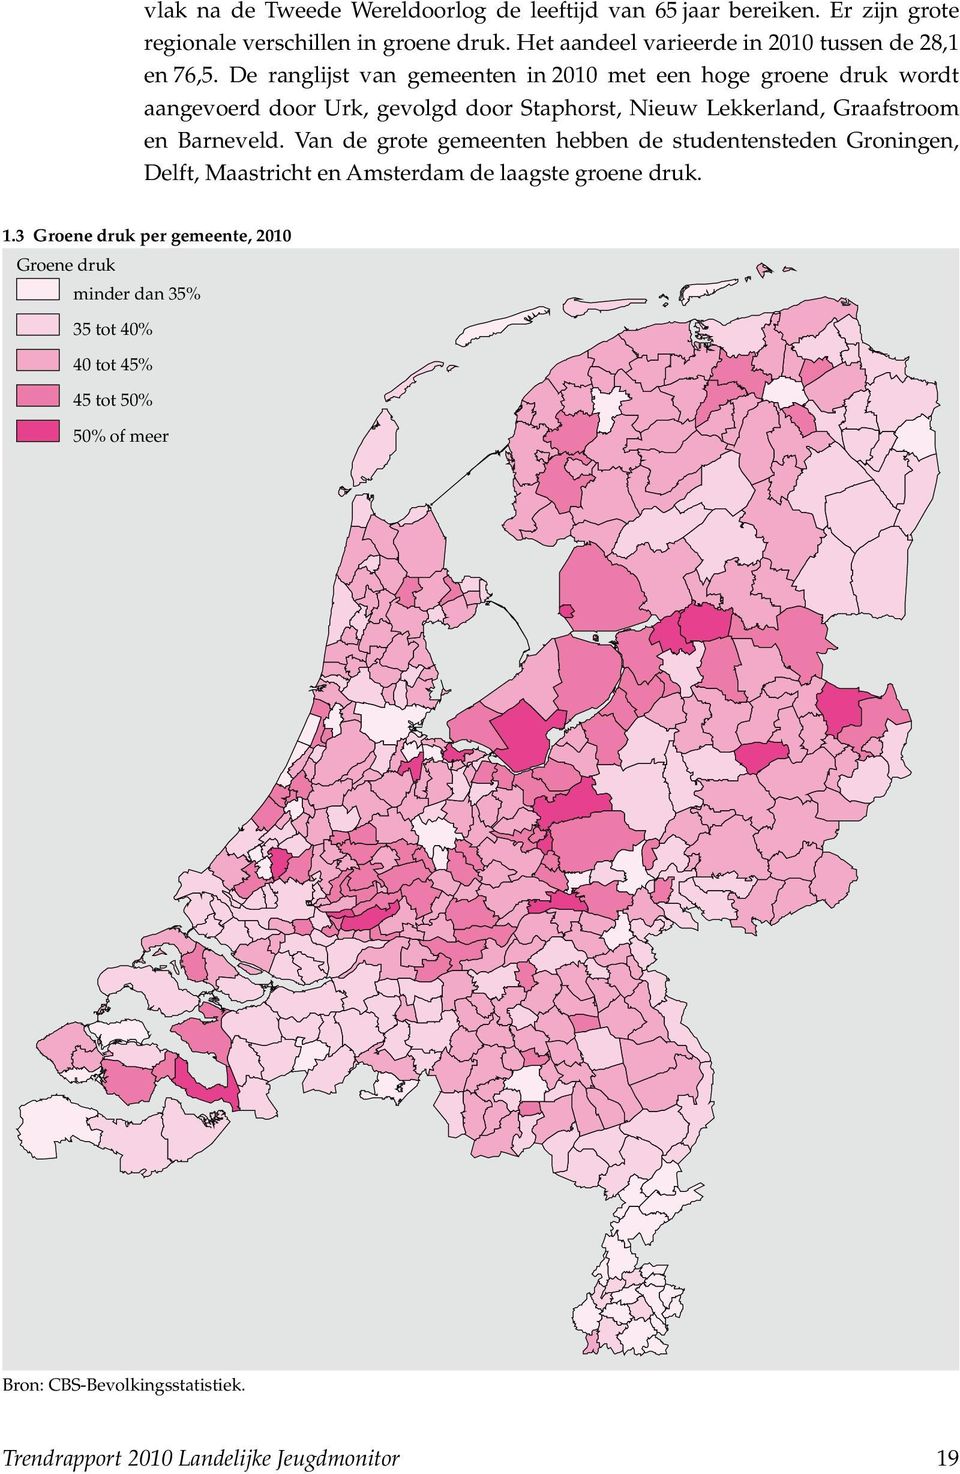 De ranglijst van gemeenten in 2010 met een hoge groene druk wordt aangevoerd door Urk, gevolgd door Staphorst, Nieuw Lekkerland, Graafstroom en Barneveld.